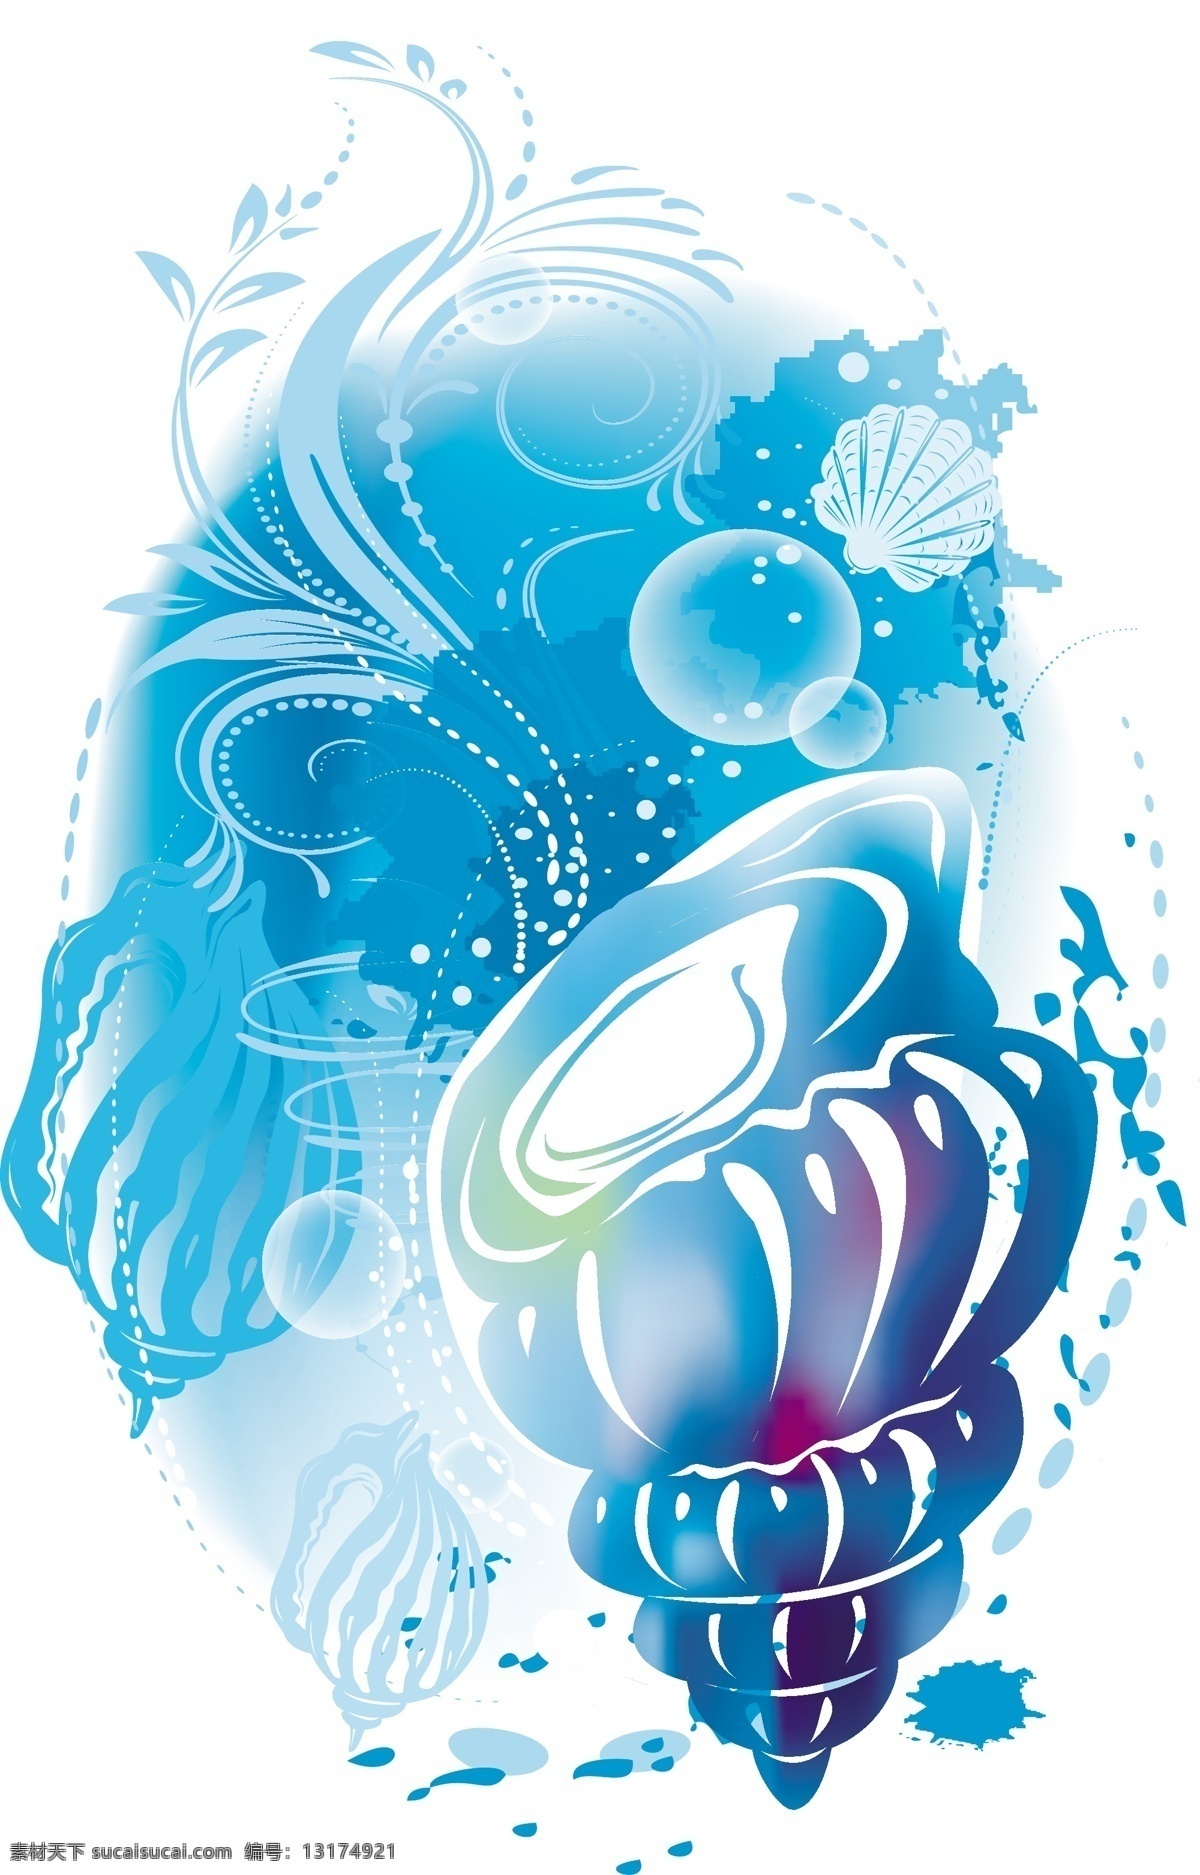 矢量 炫 蓝 线条 插画 剪影 背景 蝴蝶 花朵 手绘 炫彩 绚丽 植物 矢量图 其他矢量图